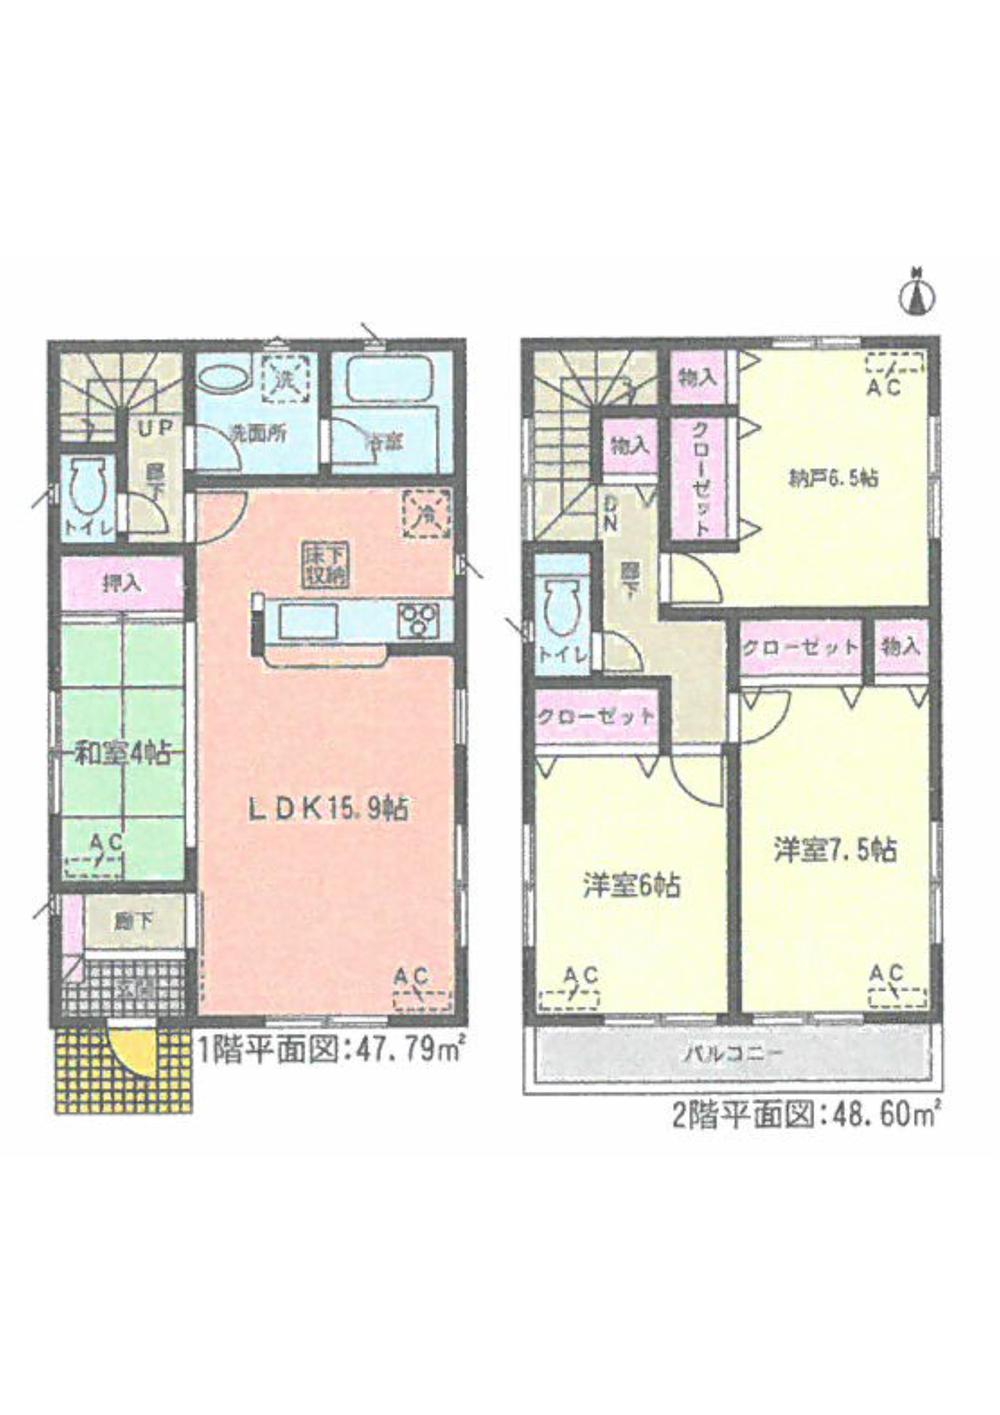 Floor plan. 28,900,000 yen, 3LDK + S (storeroom), Land area 118.08 sq m , Building area 96.39 sq m